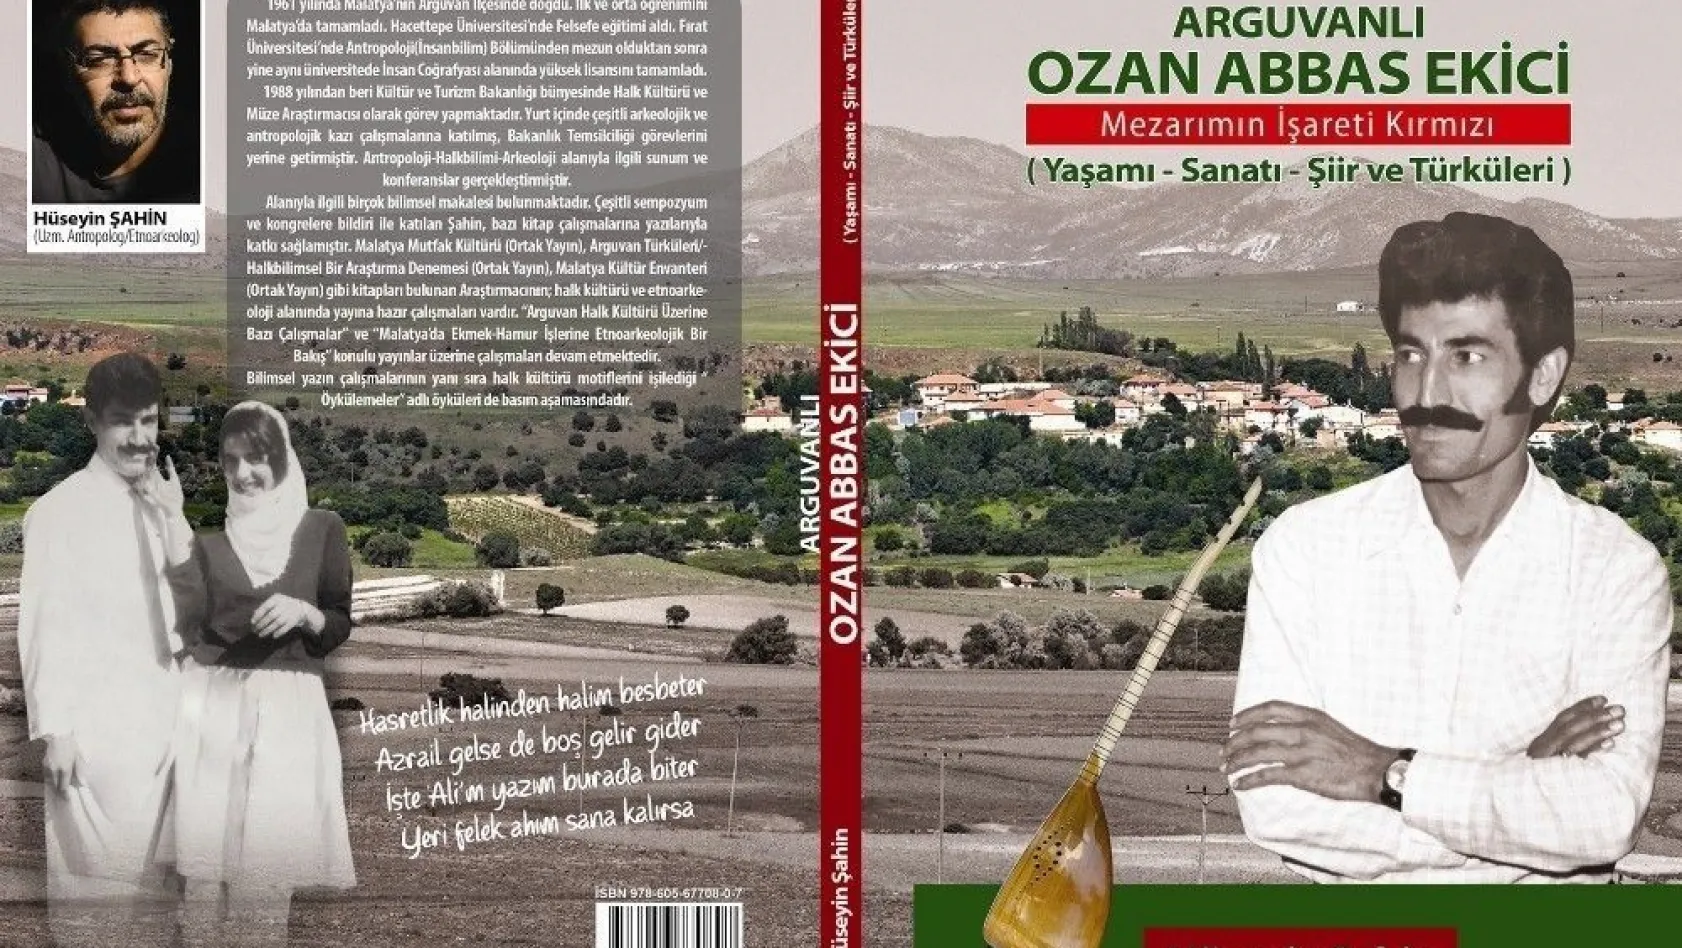 Arguvanlı Ozan Abbas Ekici'yi anlatan kitap yayınlandı
